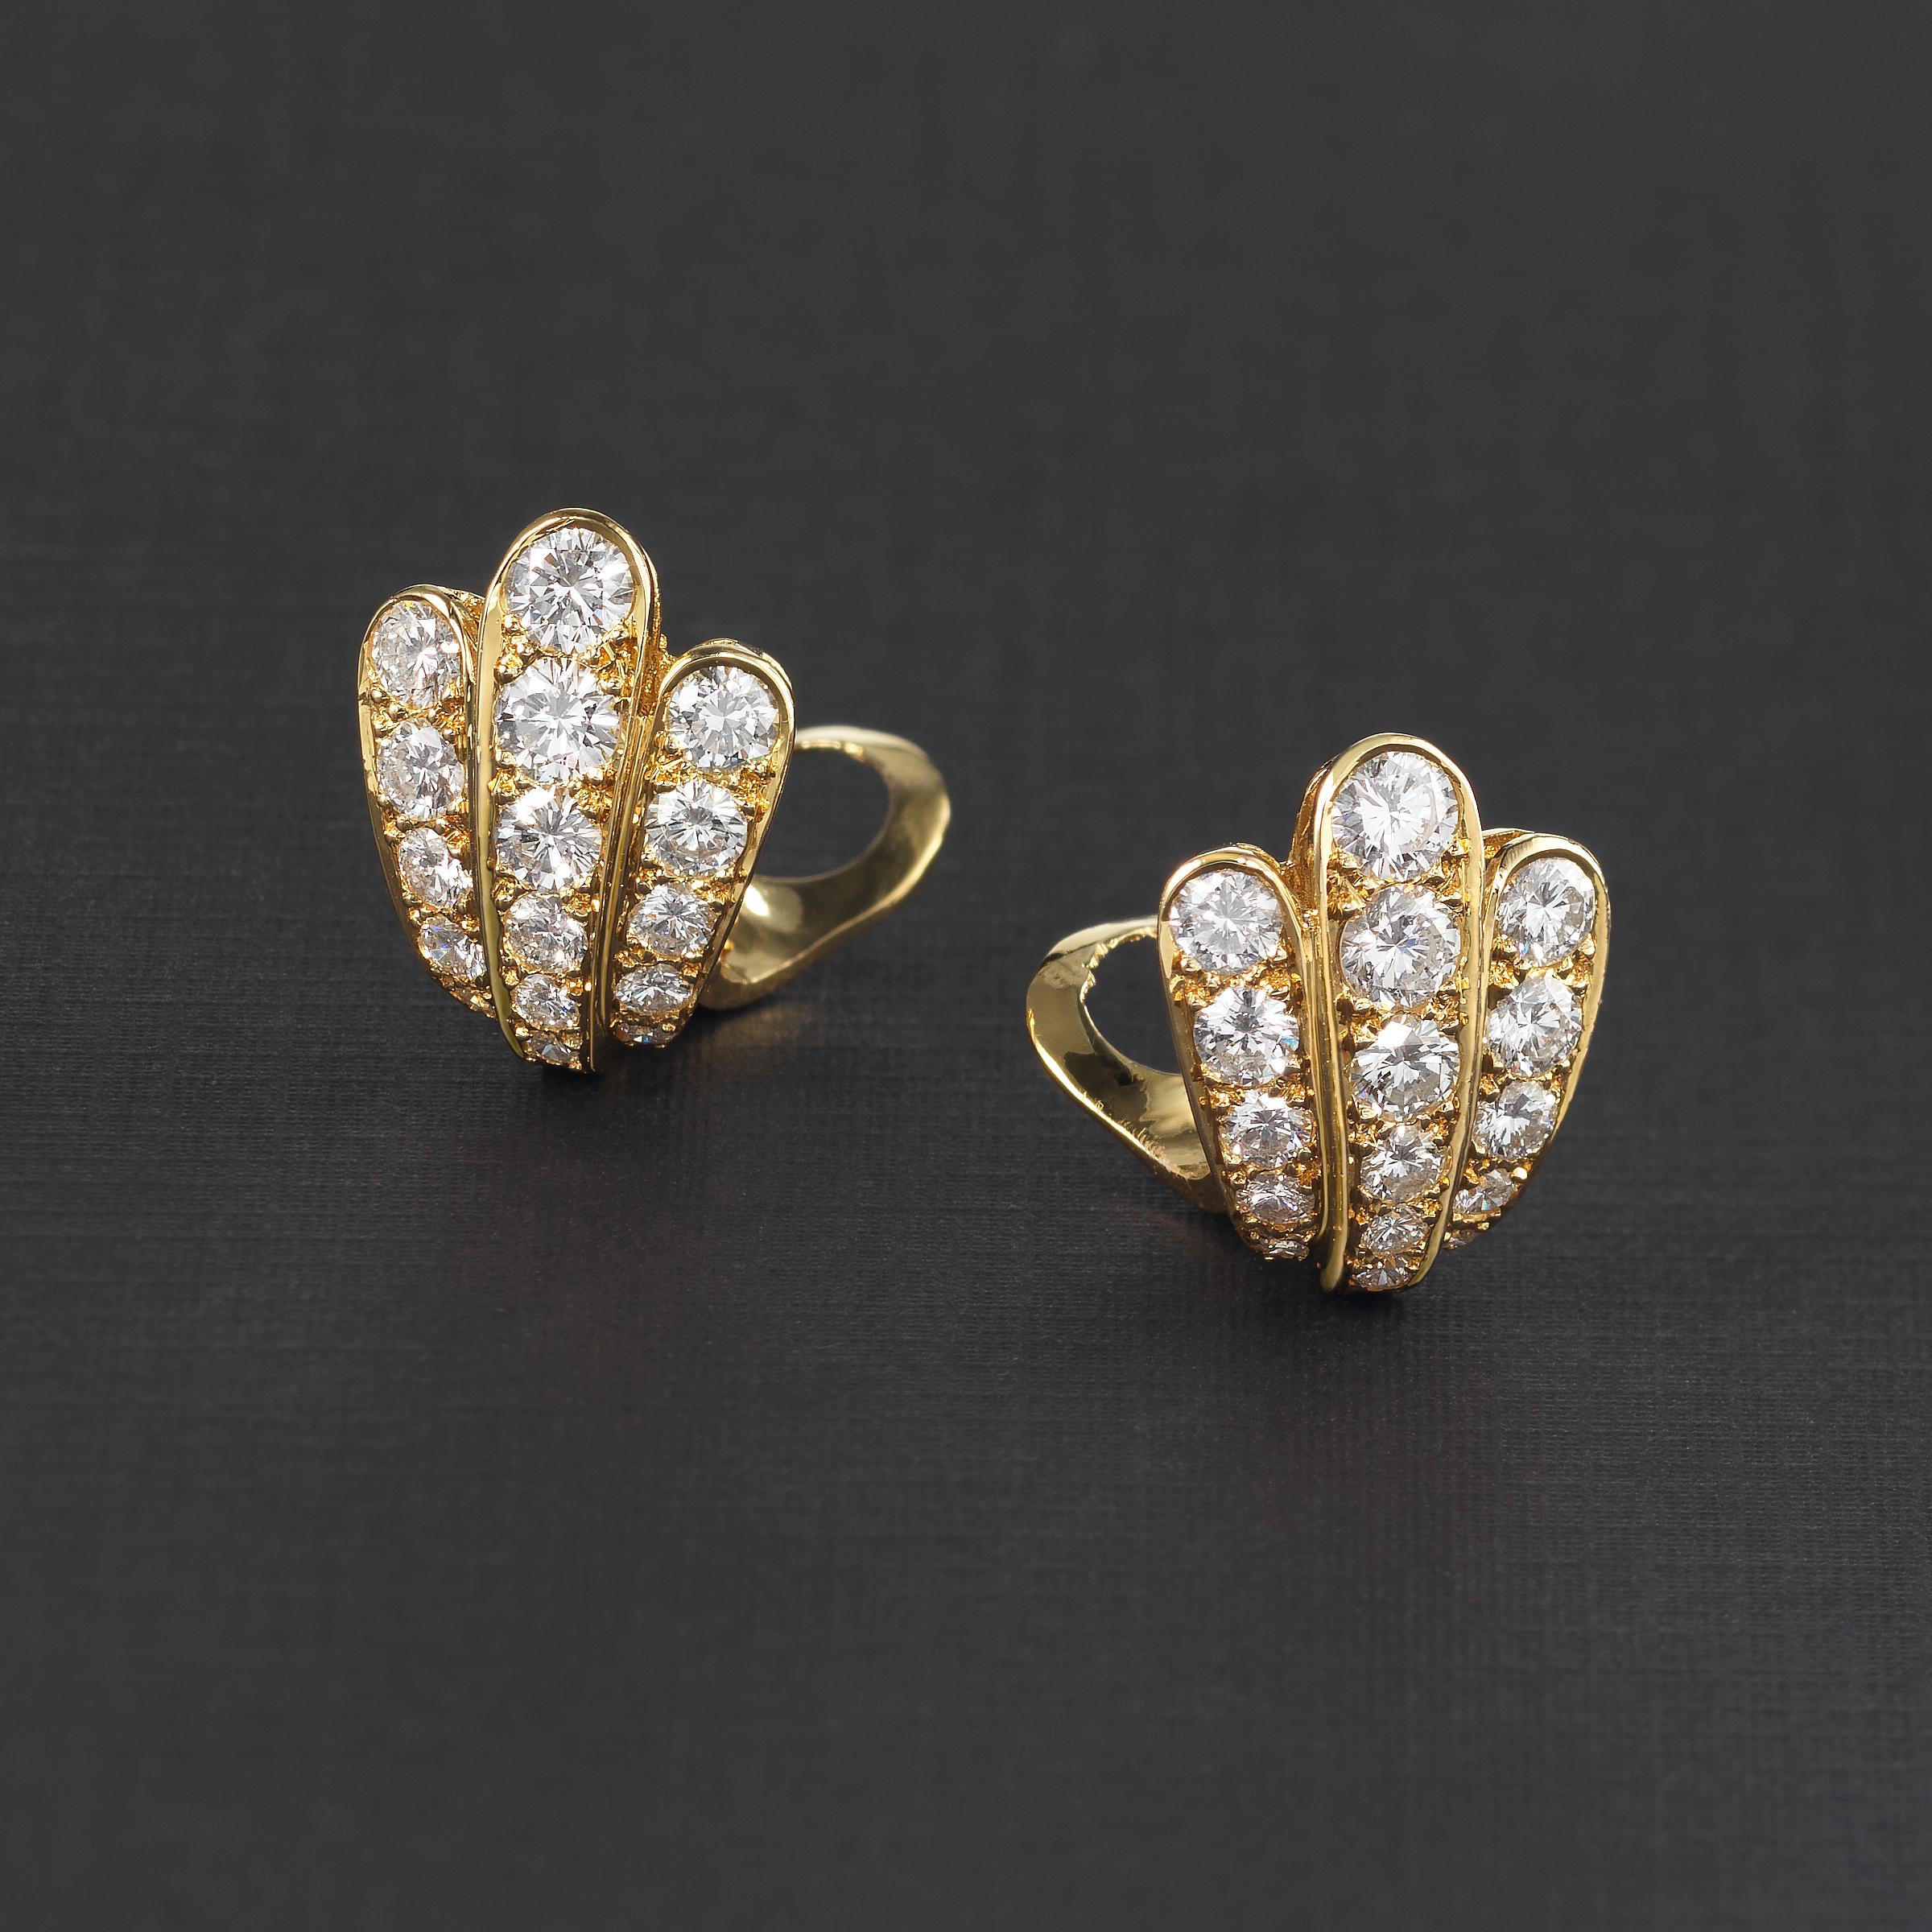 diamond-cut scallop shell earrings